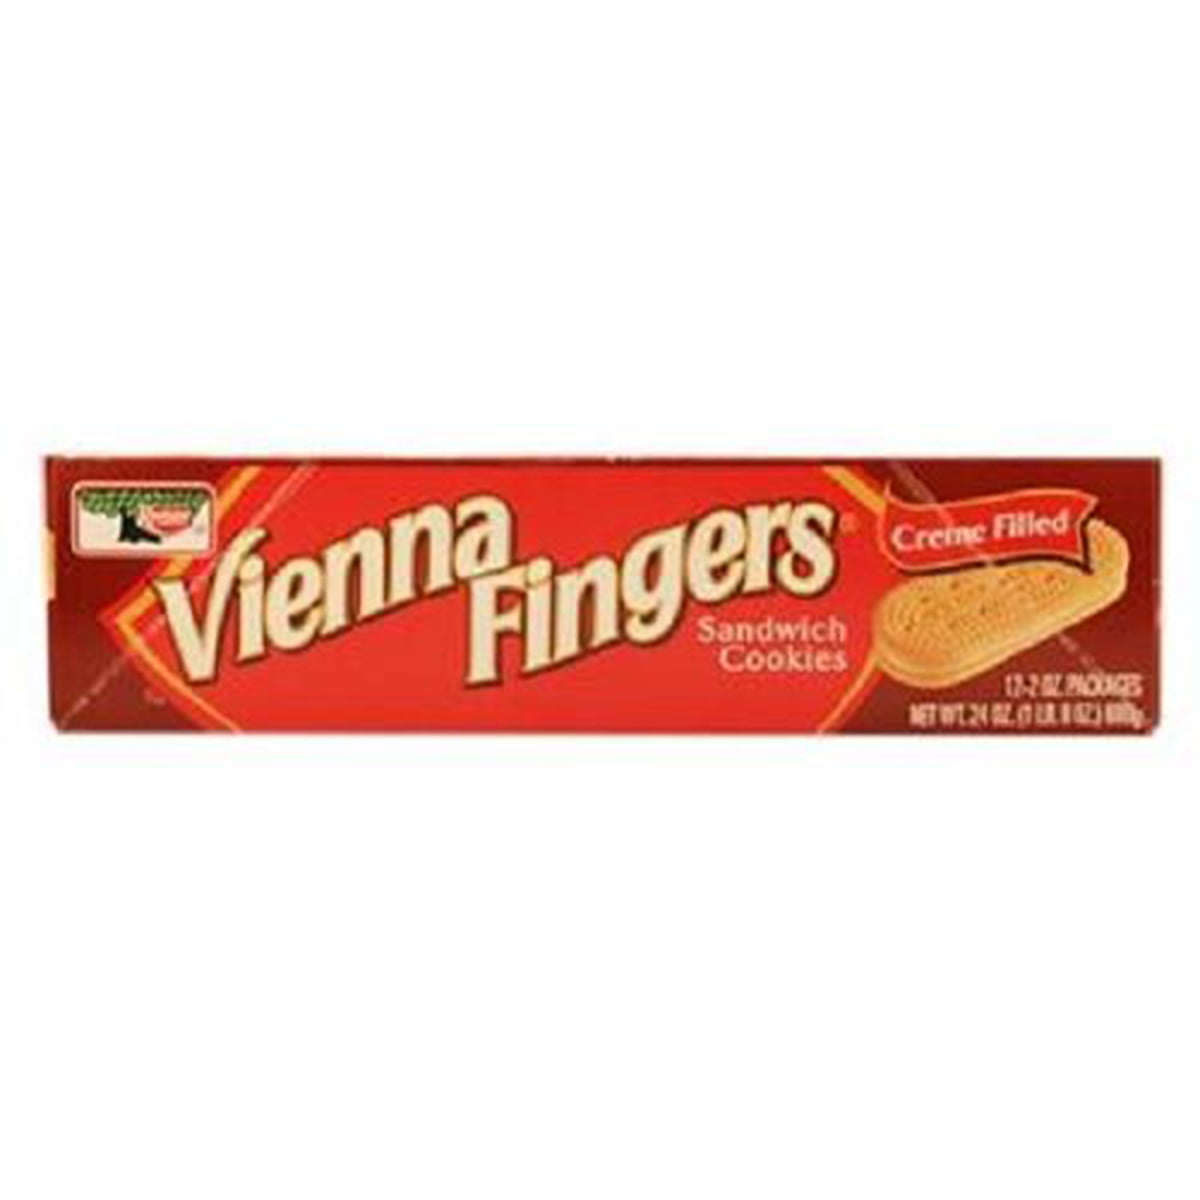 vienna fingers cookies